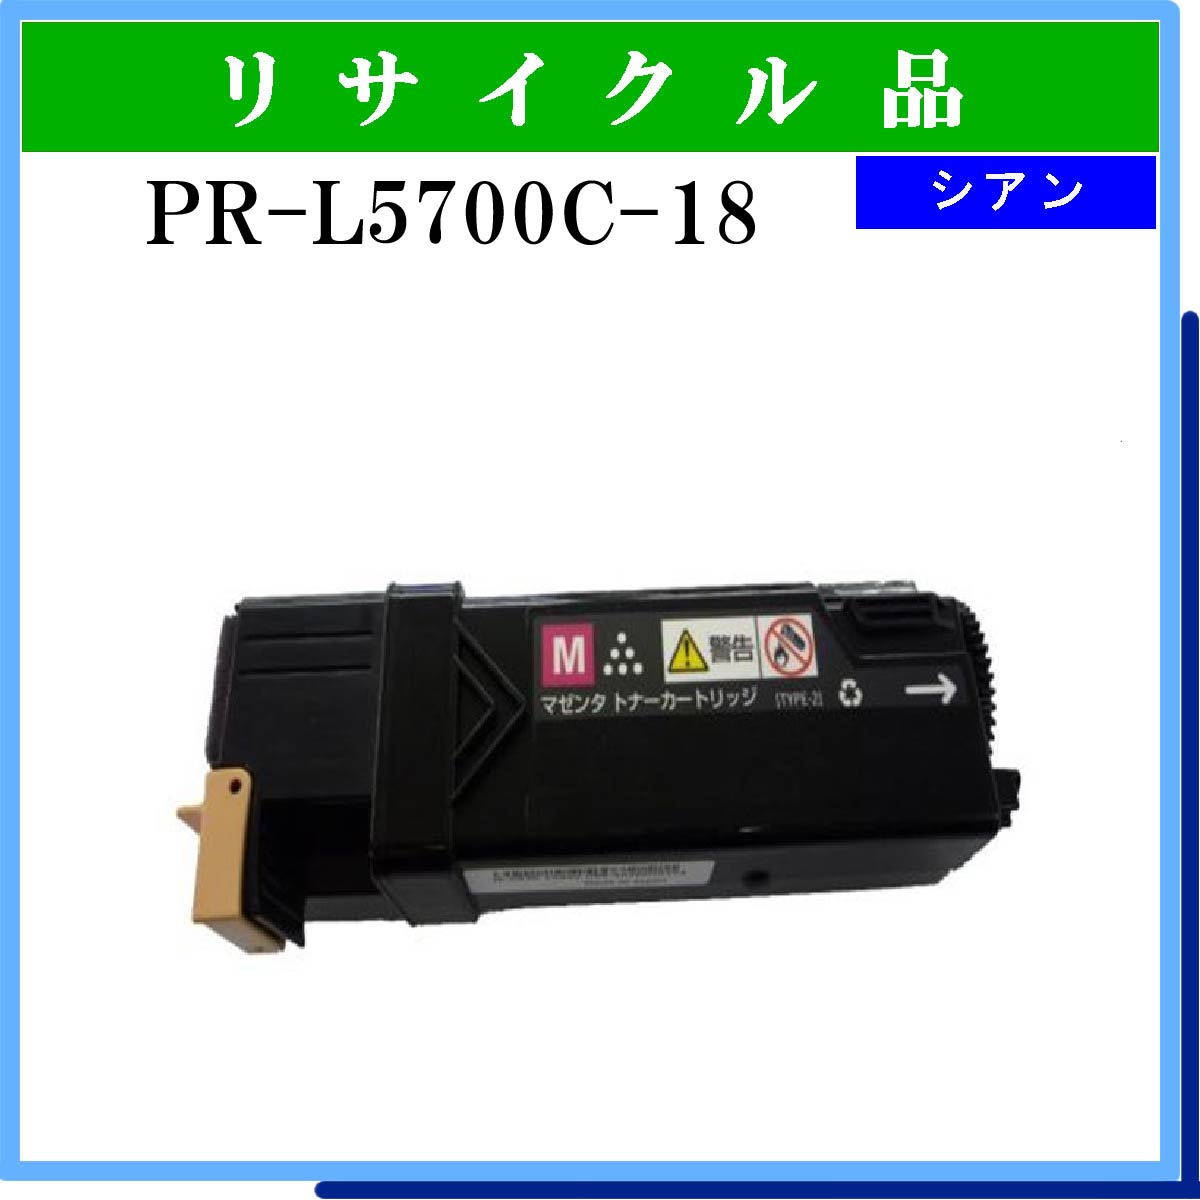 PR-L5700C-18